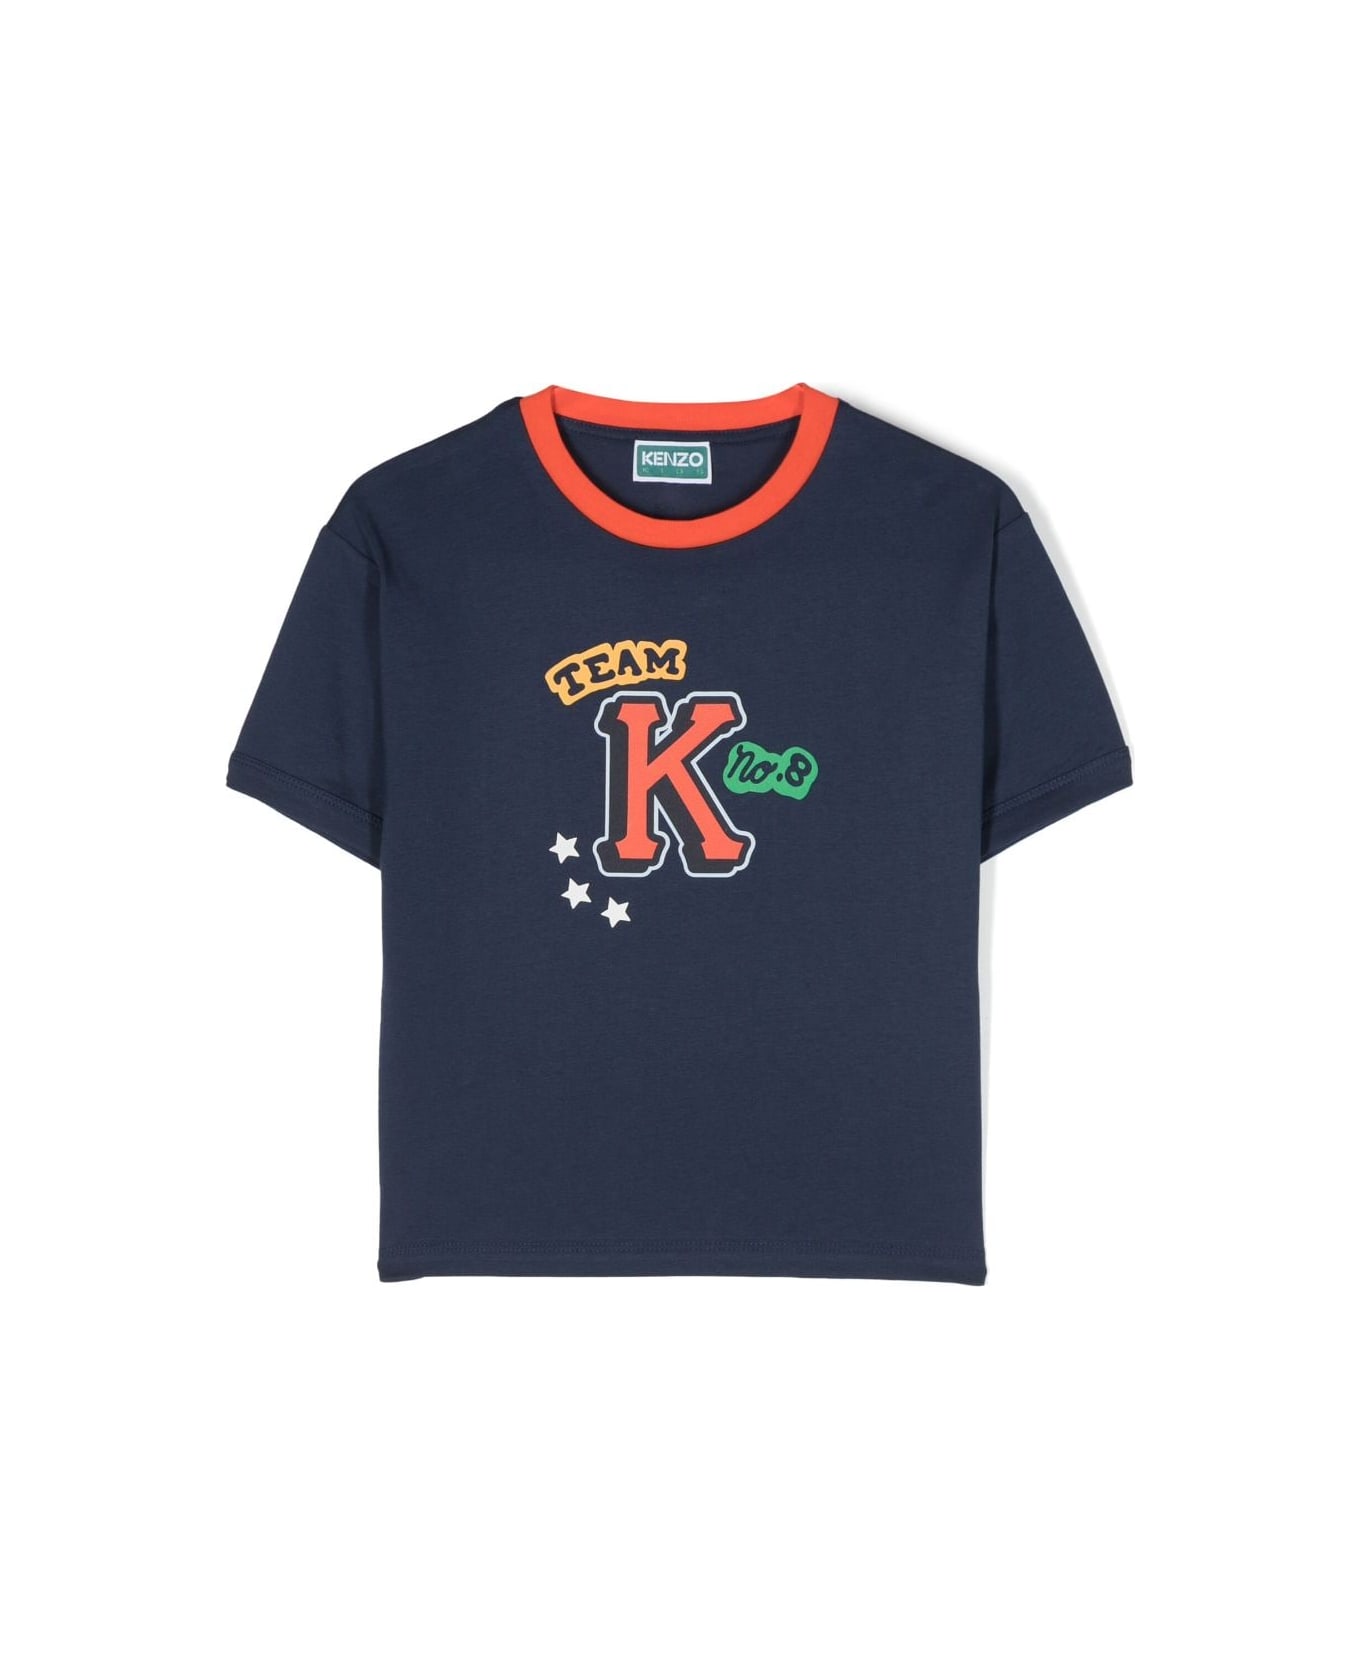 Kenzo Kids Kenzo T-shirt Blu In Jersey Di Cotone Bambino - Blu